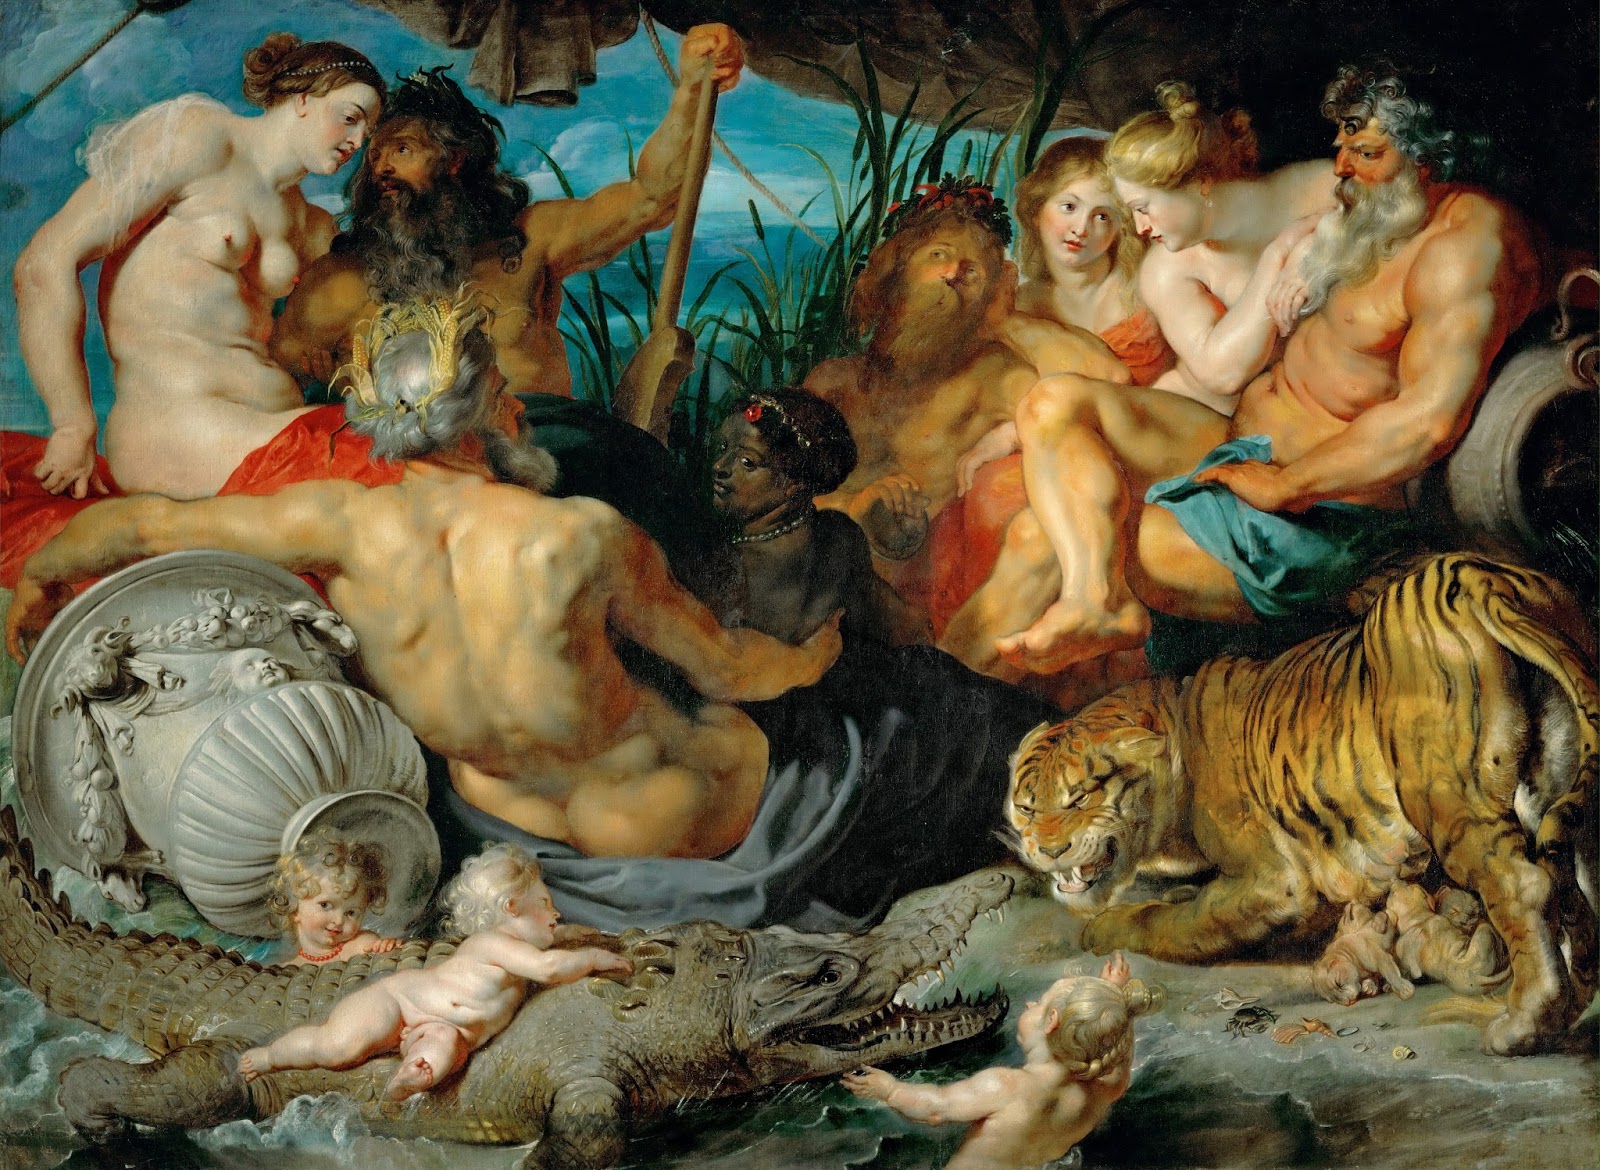 Venus and Adonis by Peter Paul Rubens